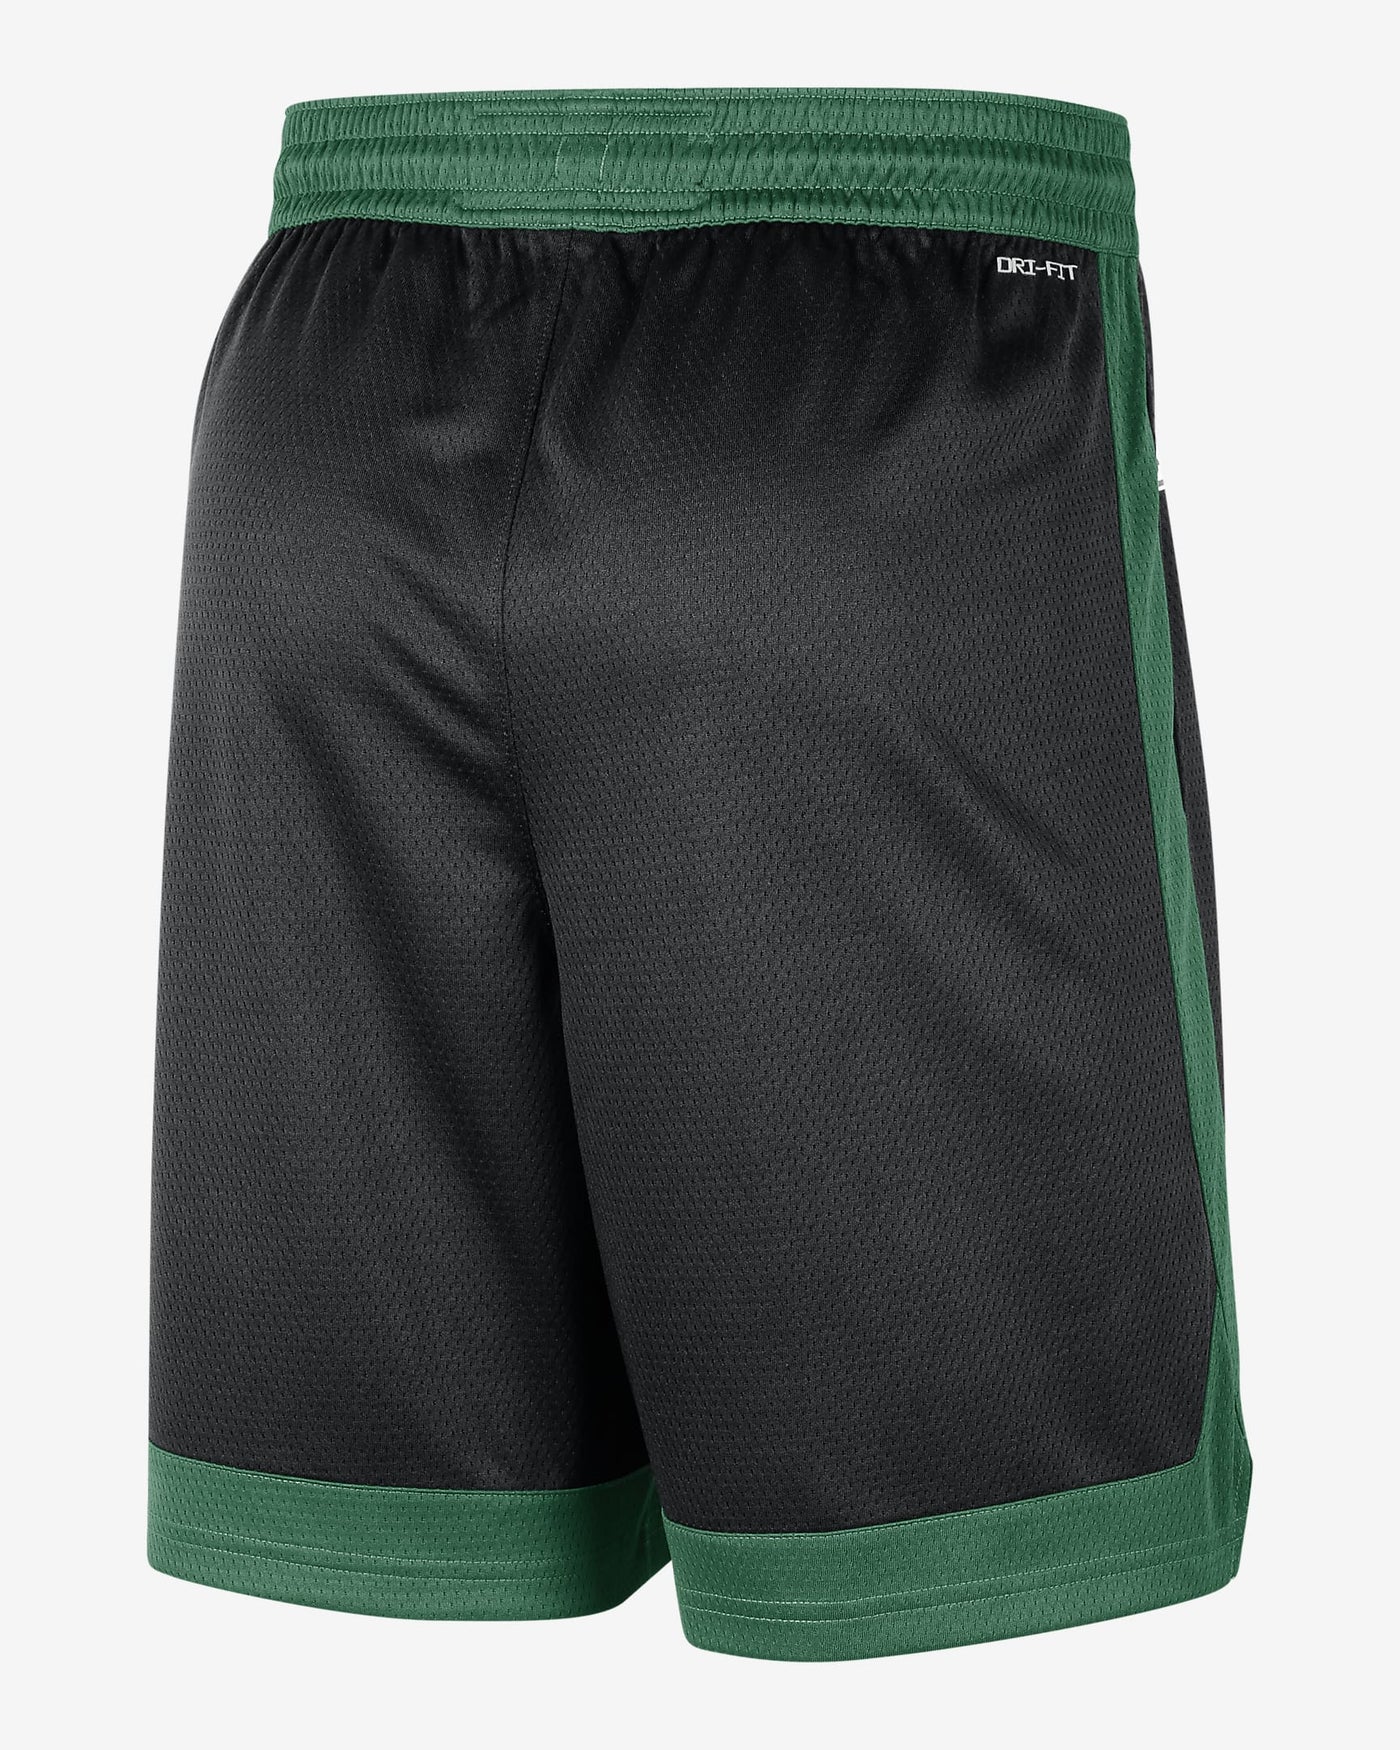 Boston Celtics Shorts Black